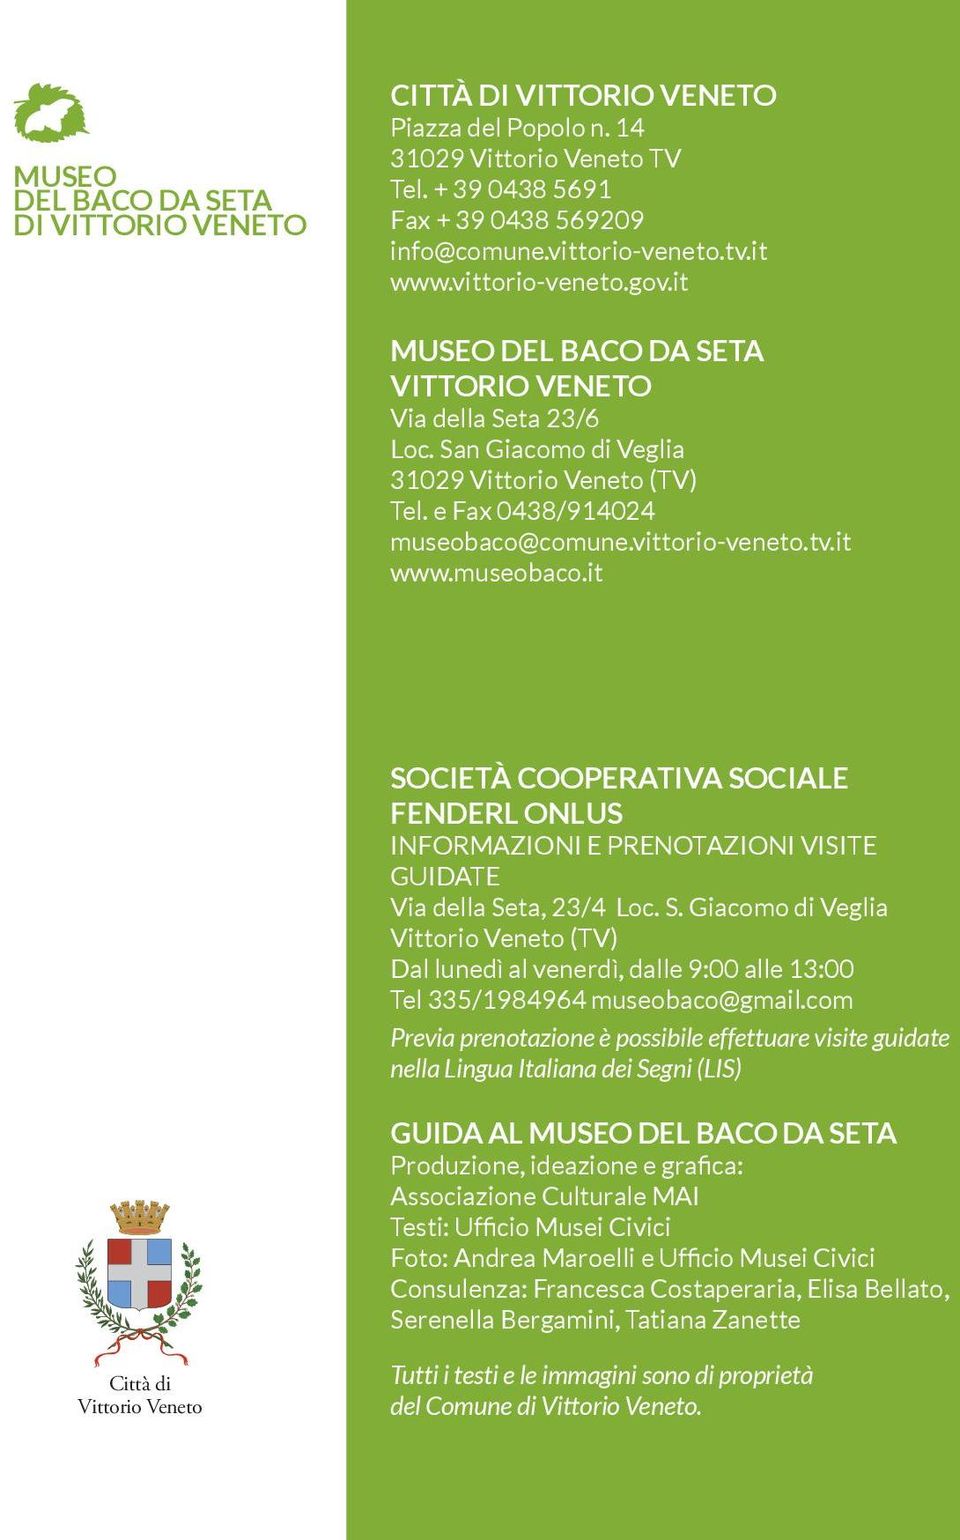 it www.museobaco.it SOCIETÀ COOPERATIVA SOCIALE FENDERL ONLUS INFORMAZIONI E PRENOTAZIONI VISITE GUIDATE Via della Seta, 23/4 Loc. S. Giacomo di Veglia Vittorio Veneto (TV) Dal lunedì al venerdì, dalle 9:00 alle 13:00 Tel 335/1984964 museobaco@gmail.